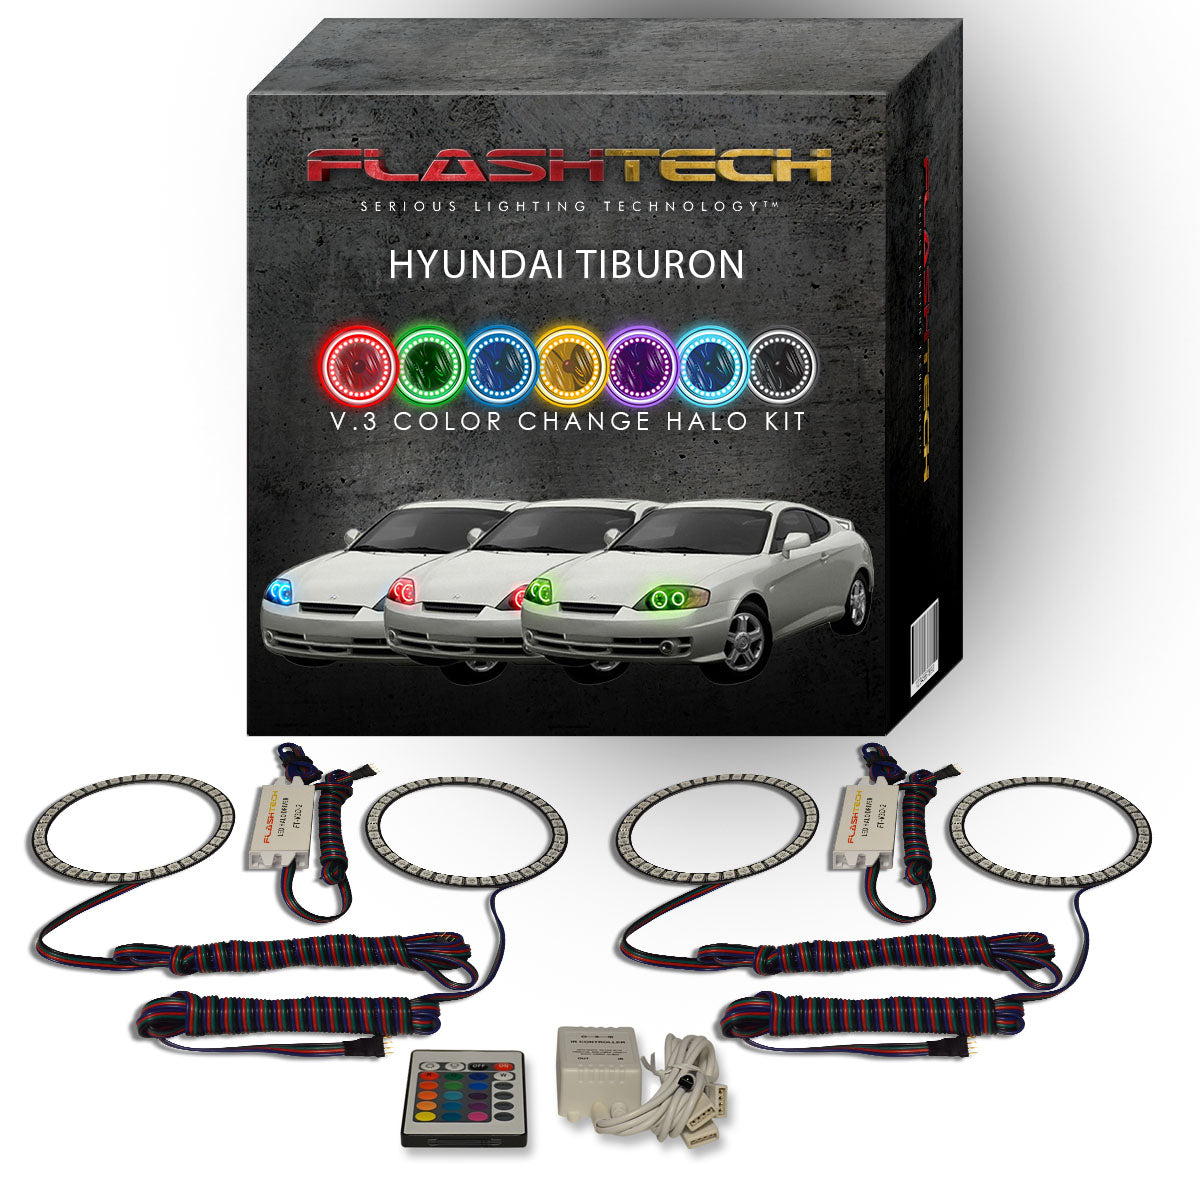 Hyundai-Tiburon-2003, 2004-LED-Halo-Headlights-RGB-Bluetooth RF Remote-HY-TB0304-V3HBTRF